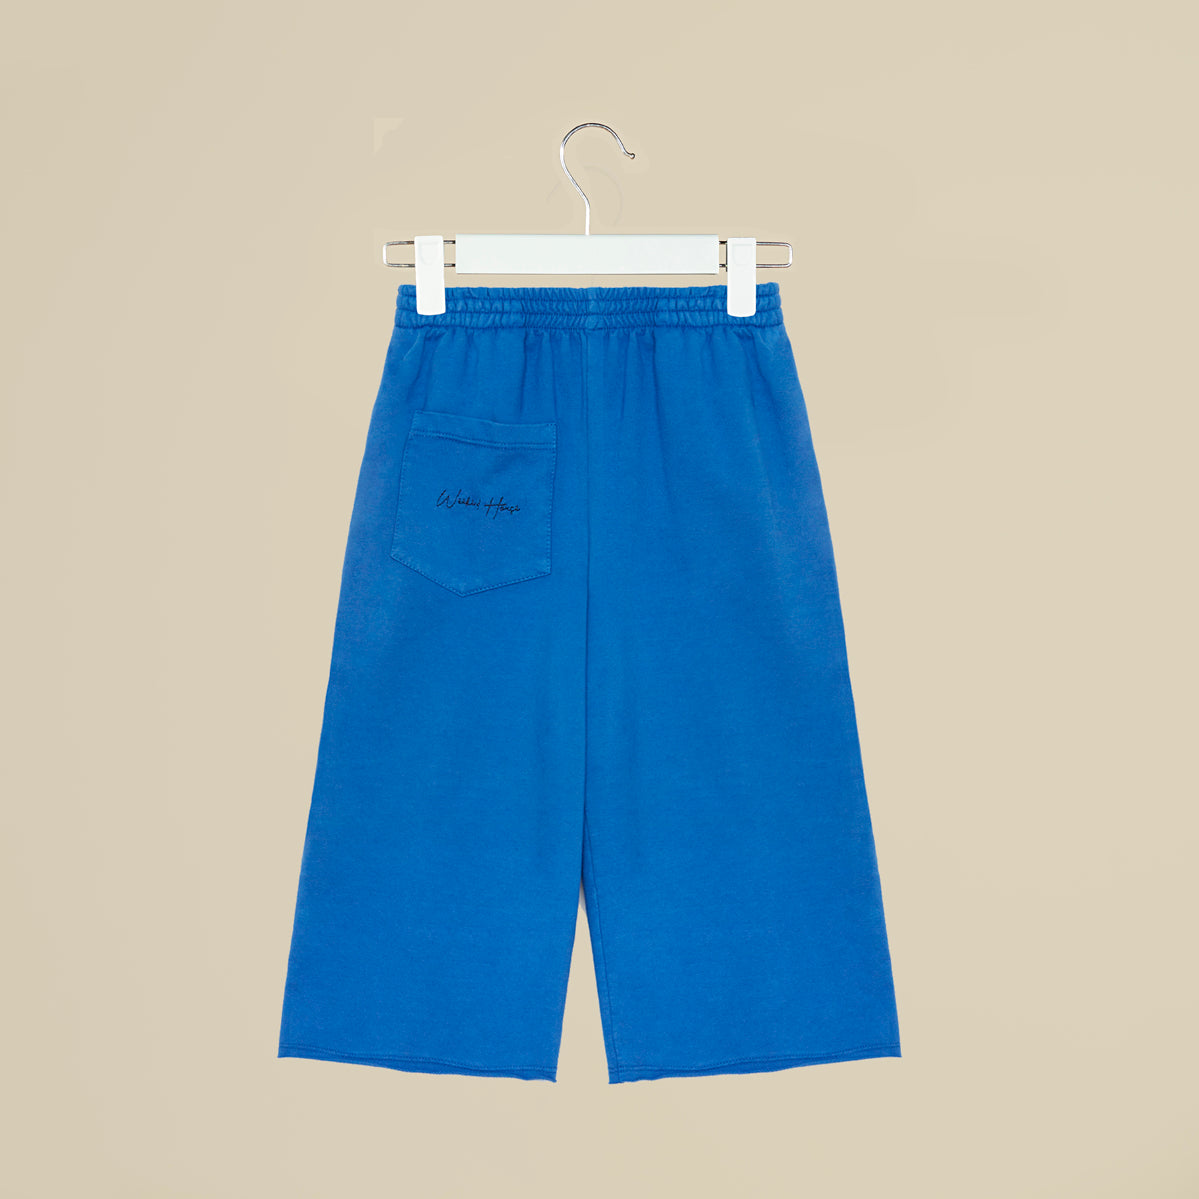 Pantalone crop in tuta blu elettrico